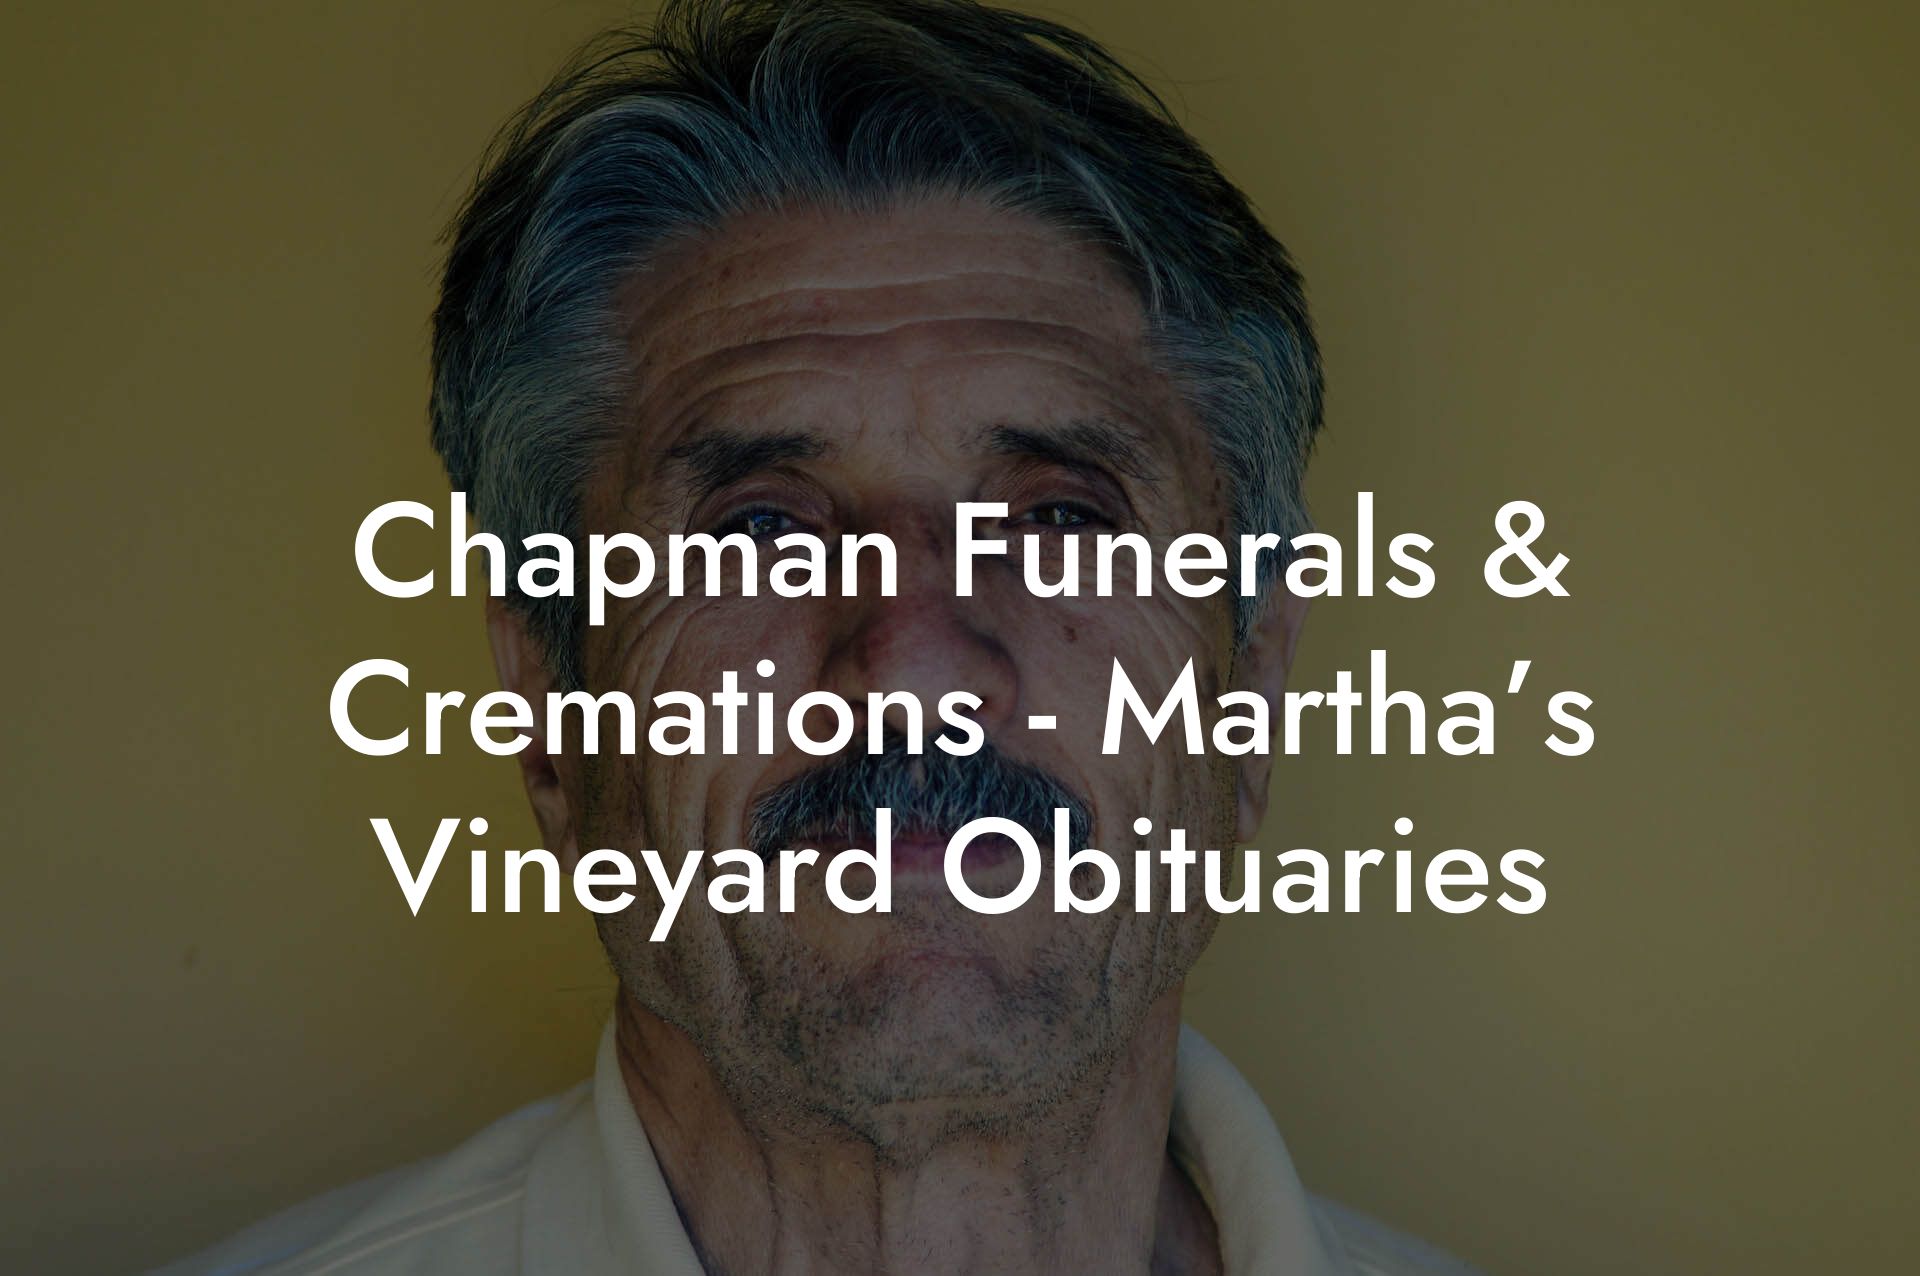 Chapman Funerals & Cremations - Martha’s Vineyard Obituaries